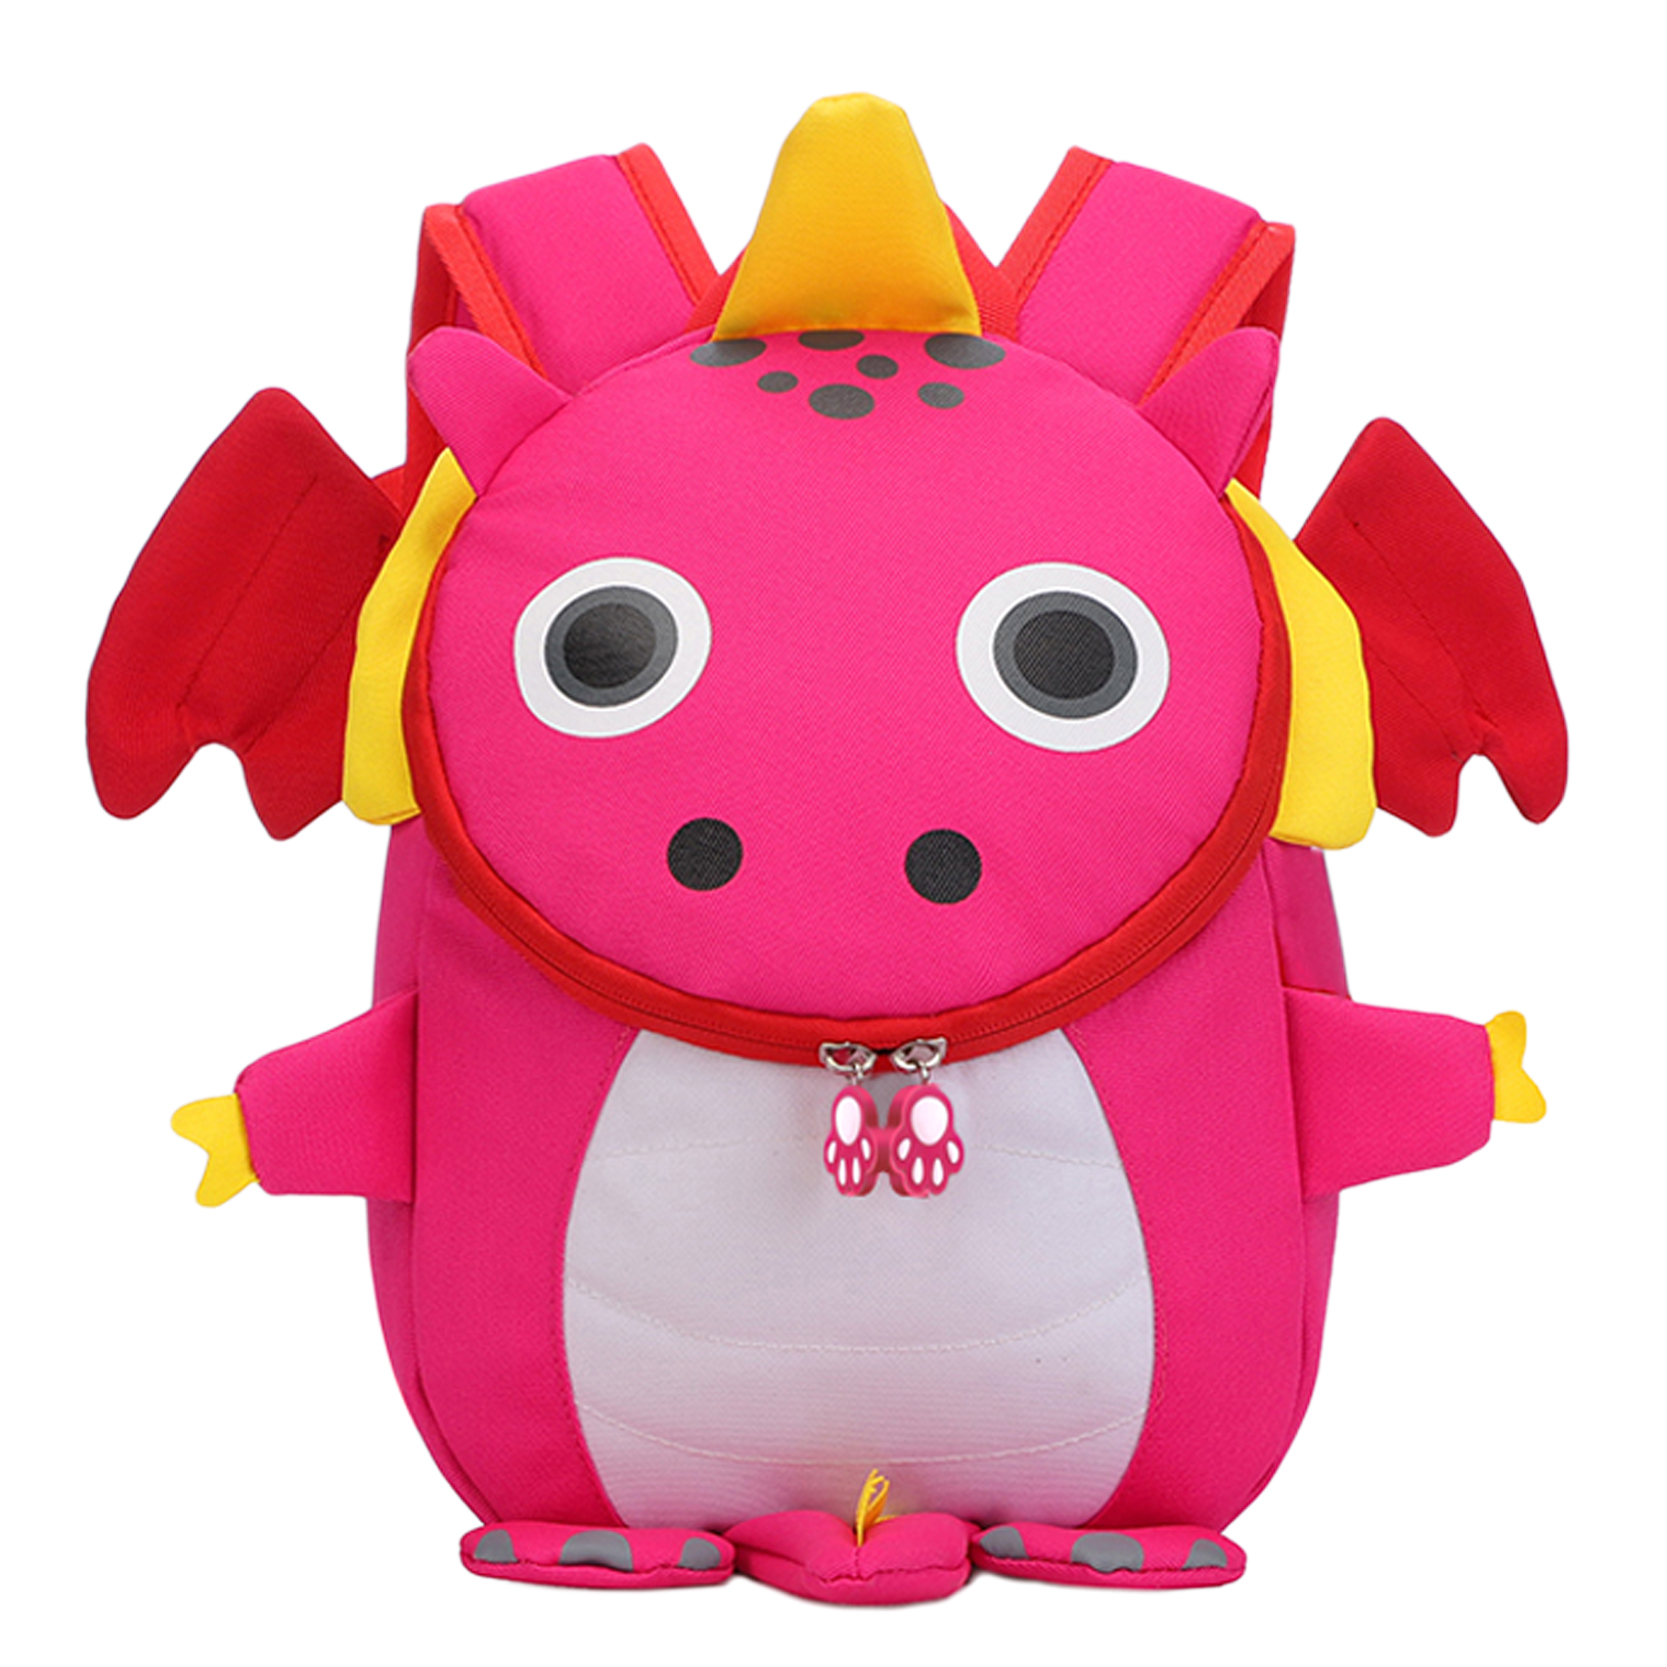 Dohe Mochila Infantil Modelo Dragon Rosa - Compartimento con Cierre de Cremalleras - Bolsillo Interi